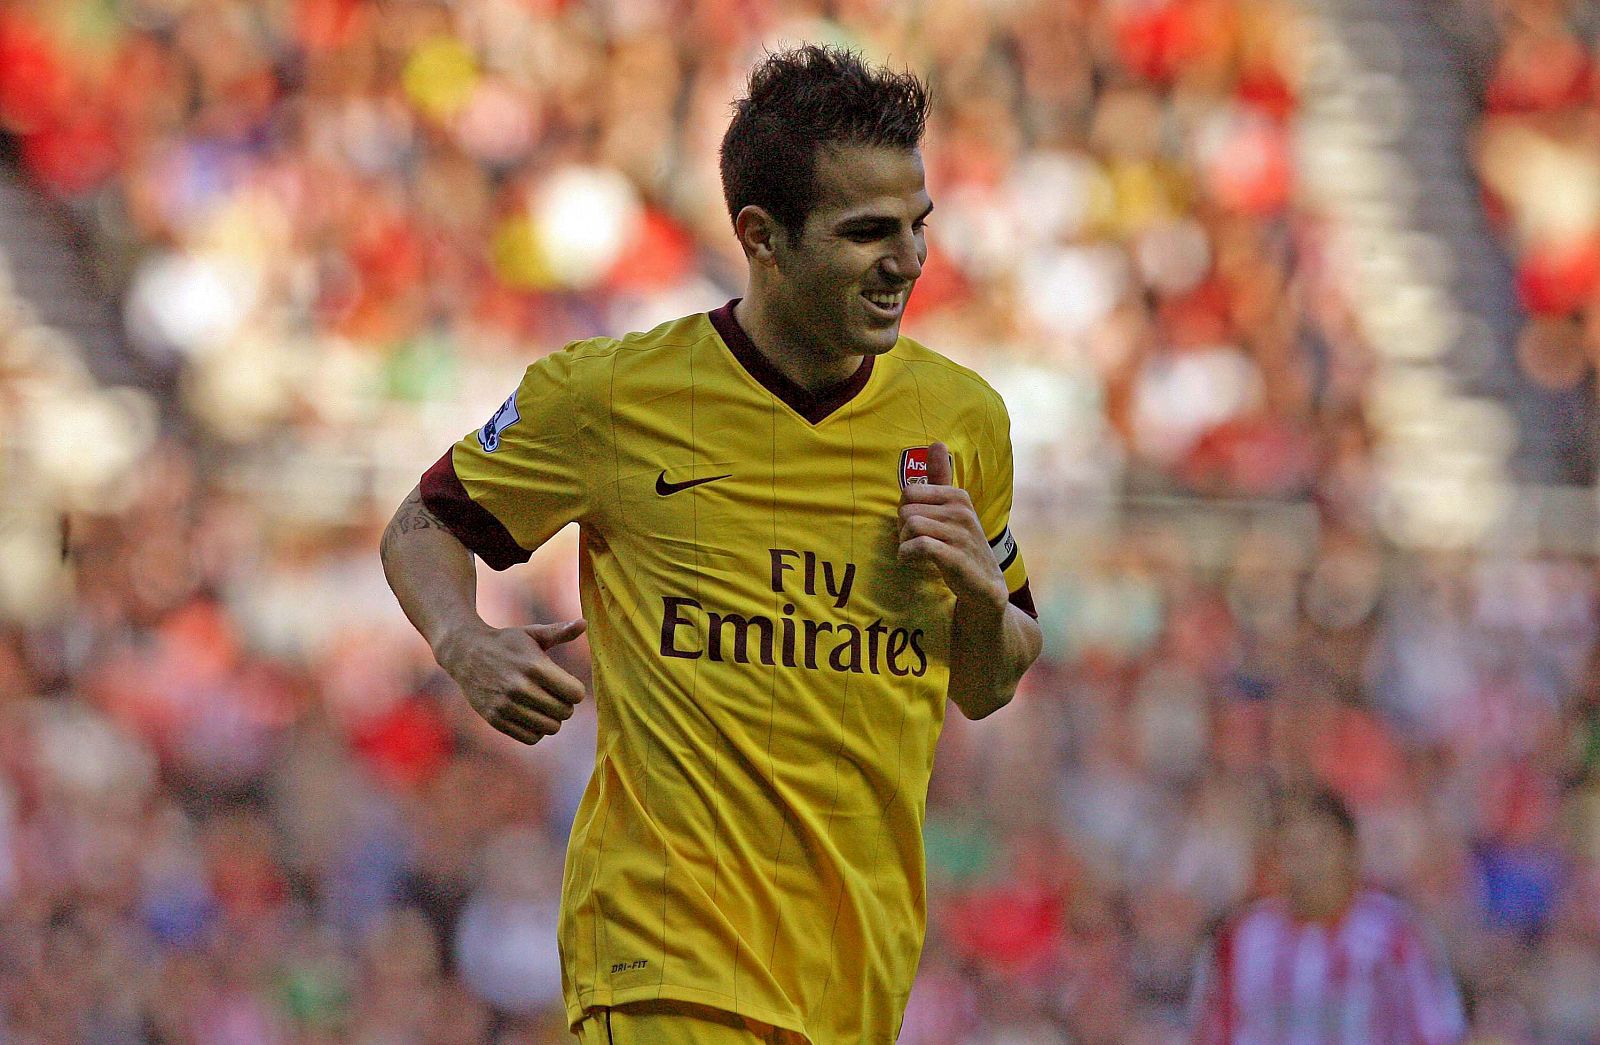 El capitán del Arsenal, el centrocampista español Cesc Fabregas